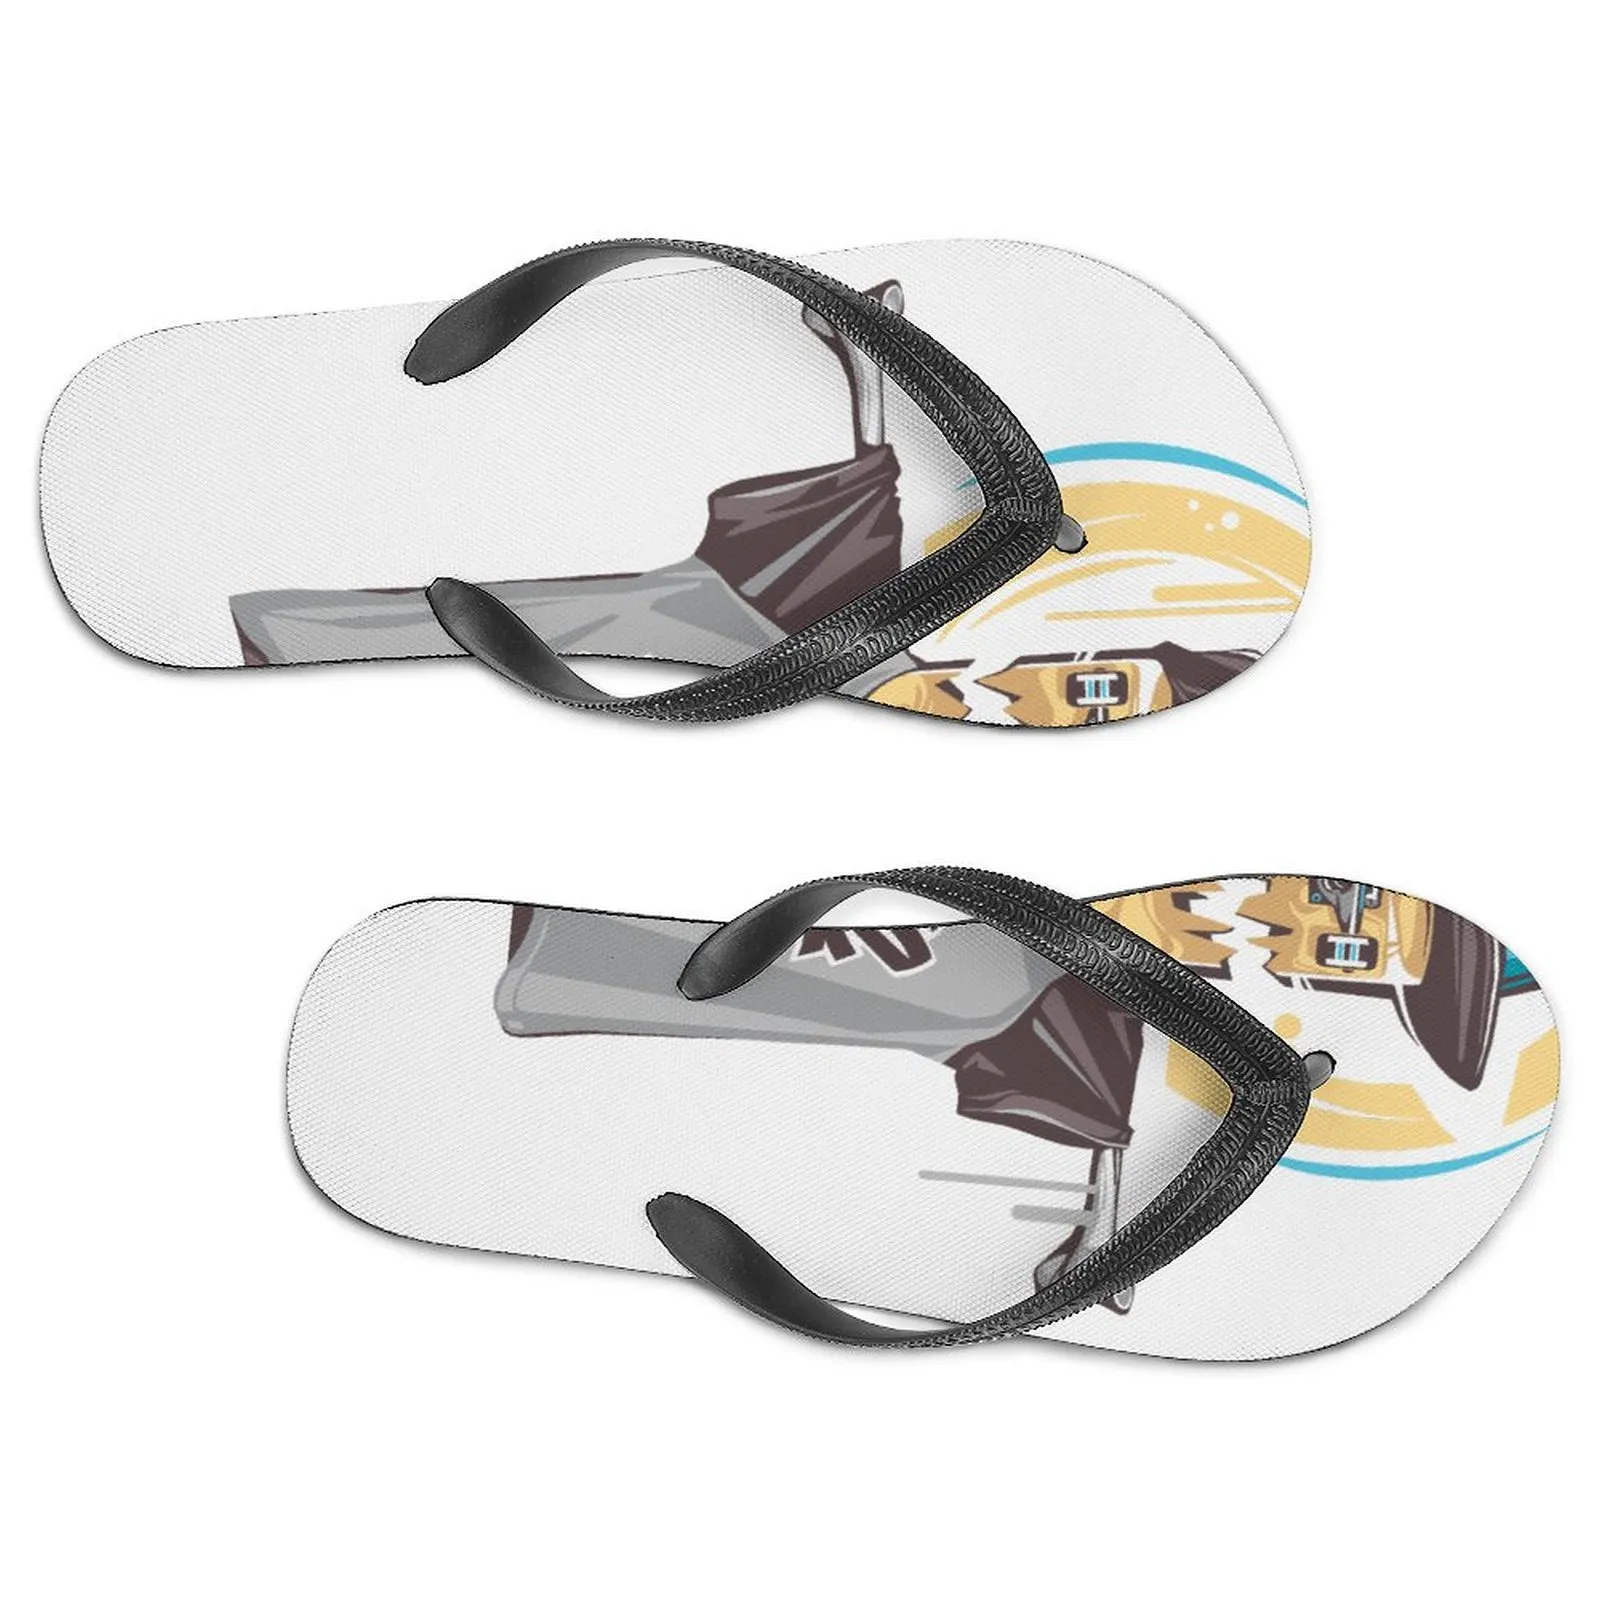 Özel Ayakkabı Erkek Kadınlar Tuval Üzerinde Kayıyor Utdoors Spor Sakinleri Özelleştirilmiş Diy Ayakkabı Spor Eğitmenleri Klasik Spor Sneaker Erkek Nefes Alabaş Chaussures EUR 39-46 C81DSAFGXDASFASD